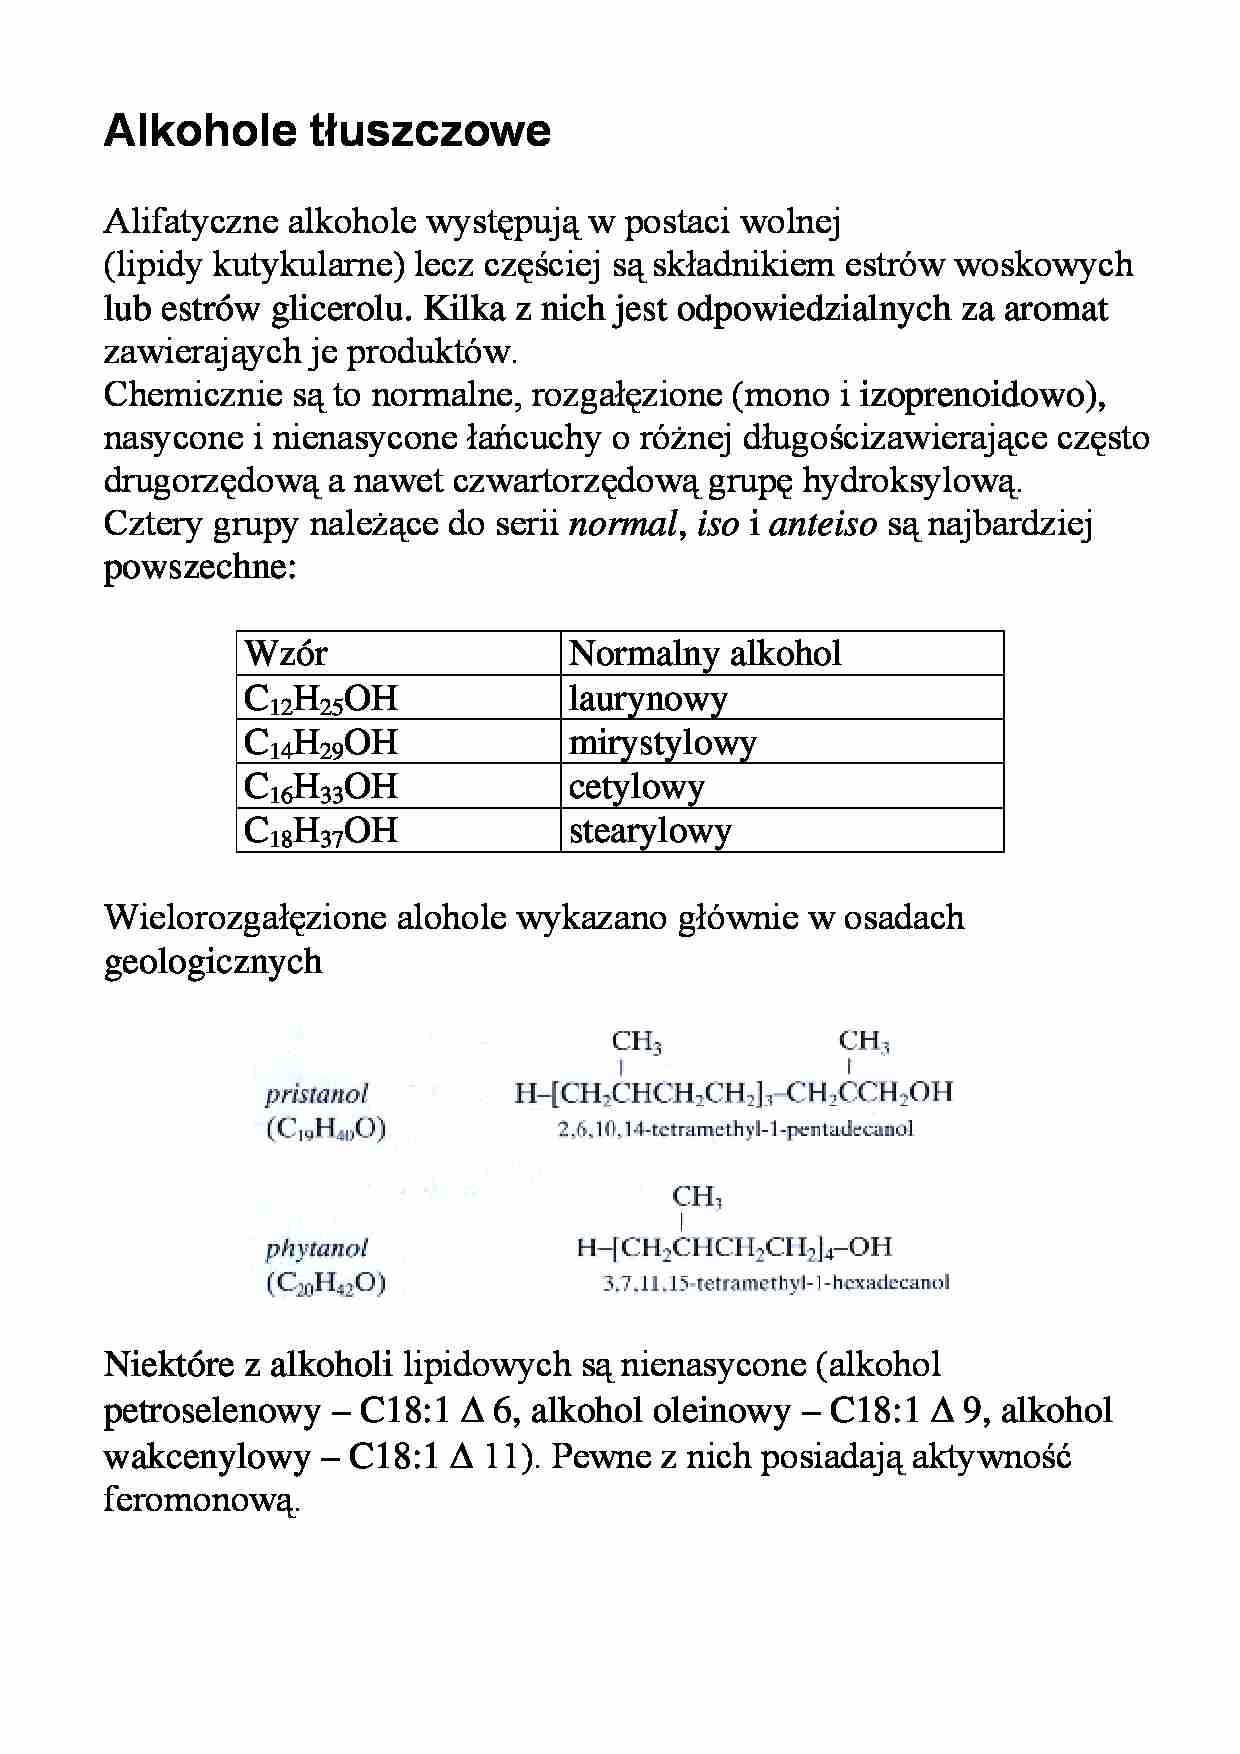 Lipidy - alkohole i witaminy - strona 1